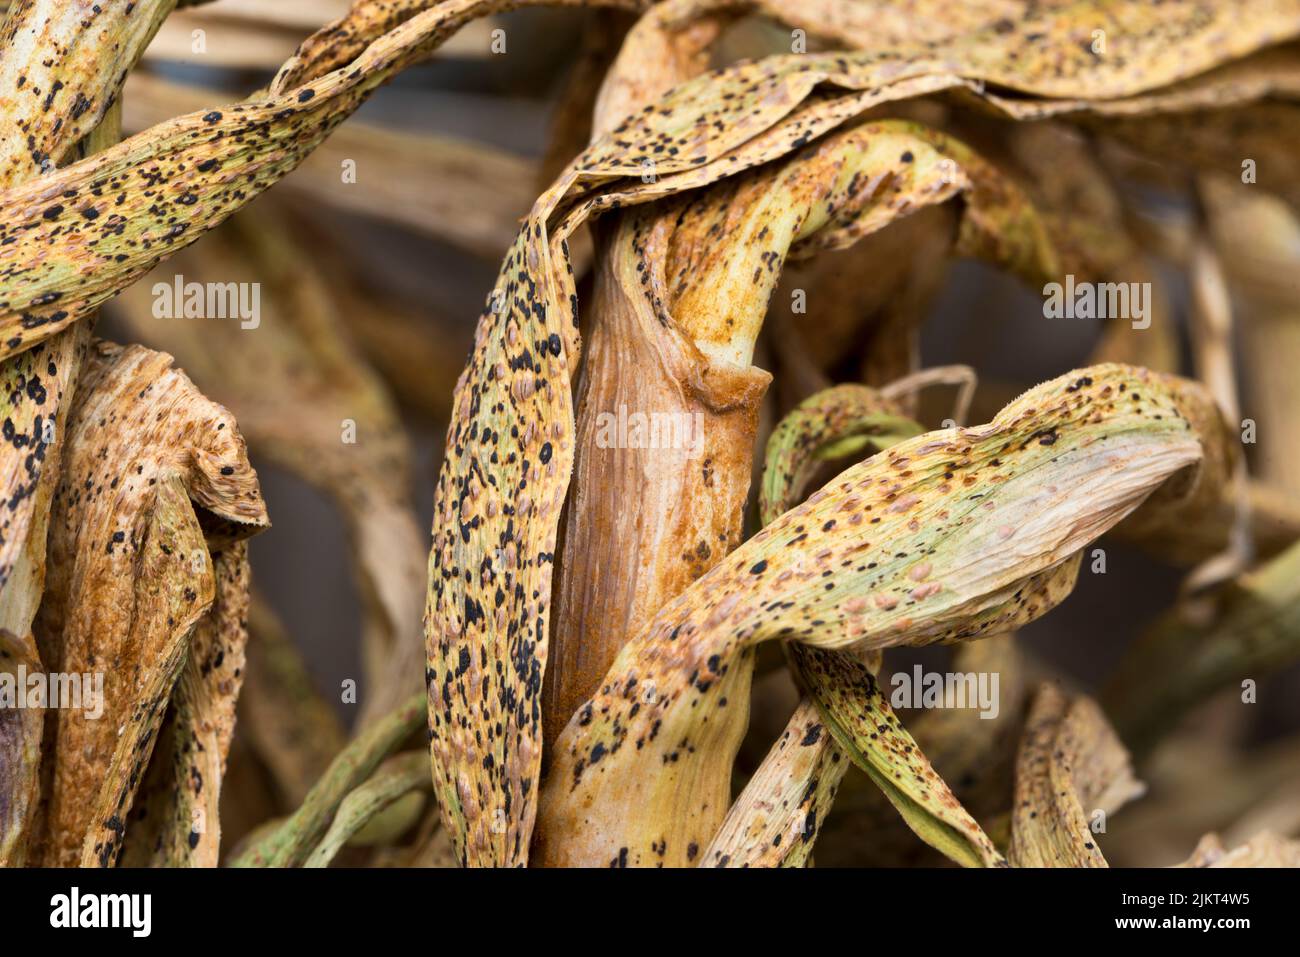 Ruggine sui porri che asciugano le foglie d'aglio Foto Stock